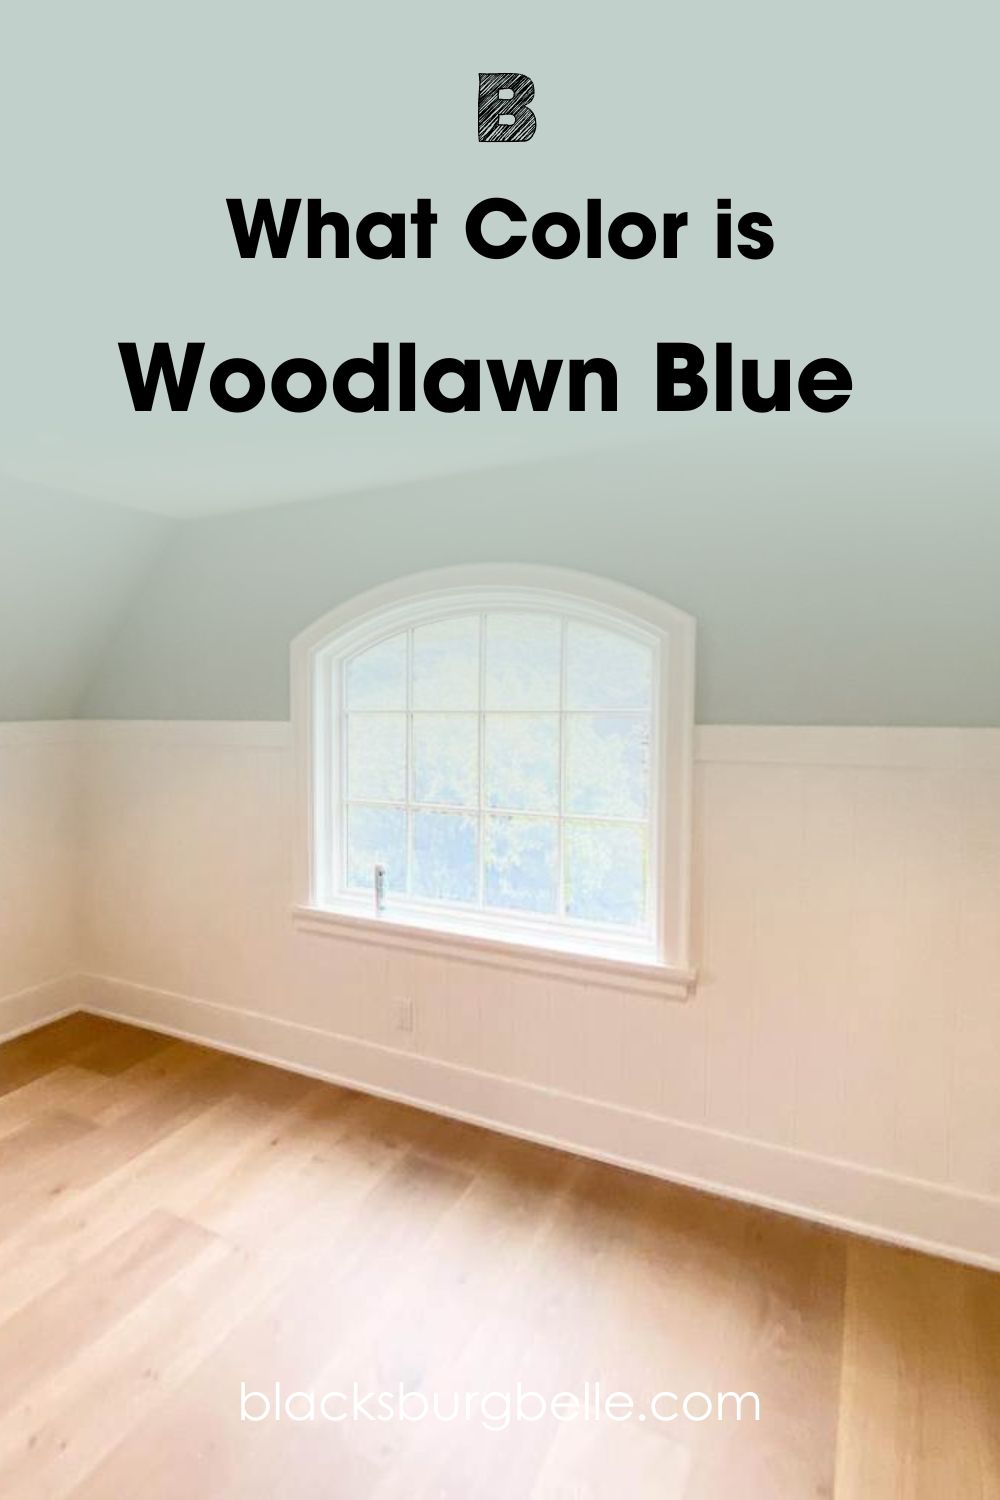 Woodlawn Blue